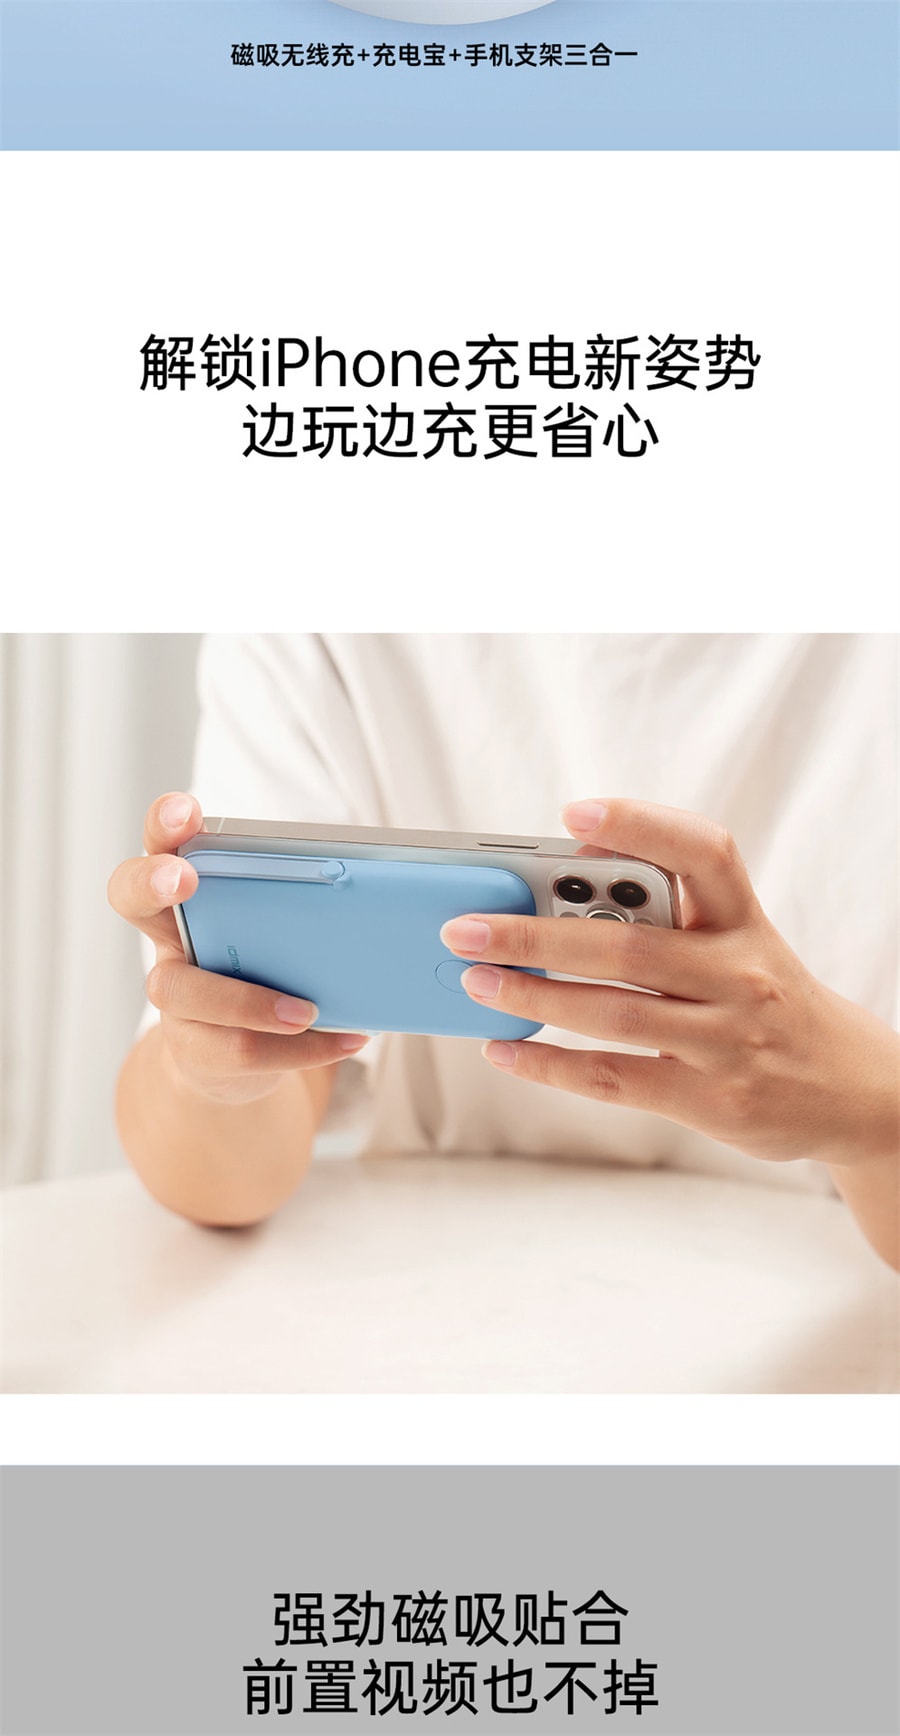 【中国直邮】 IDMIX 磁吸无线充支架移动电源 magsafe 适用于iphone手机充电 白色款 1件